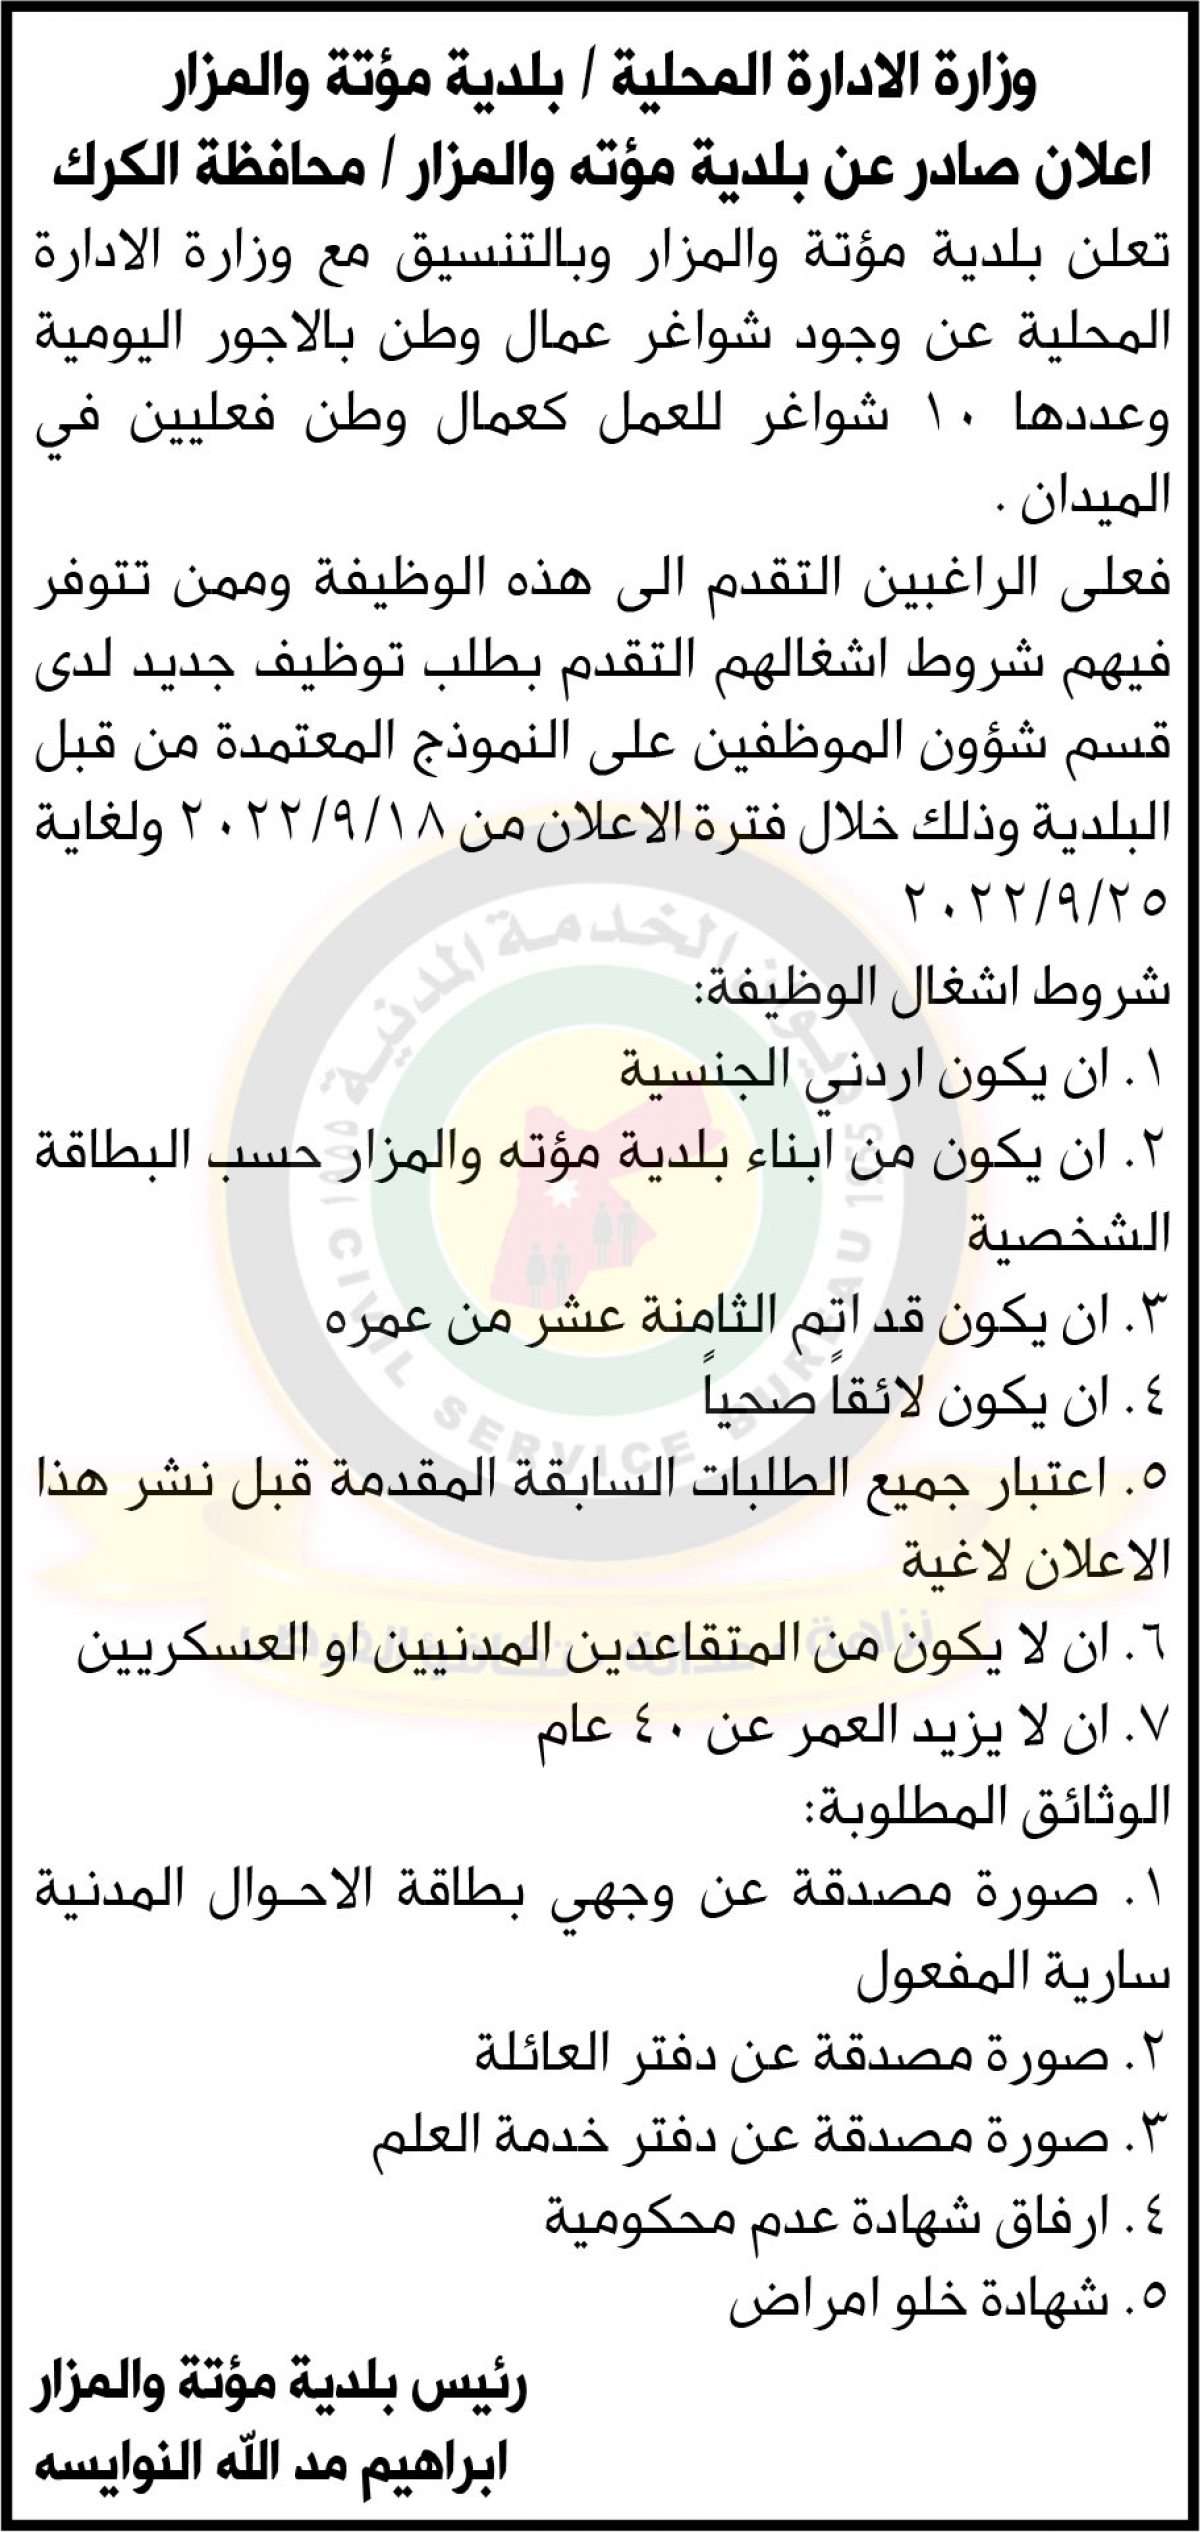 إعلان توفر شواغر عمال وطن صادر عن وزارة الإدارة المحلية / بلدية مؤتة والمزار / محافظة الكرك